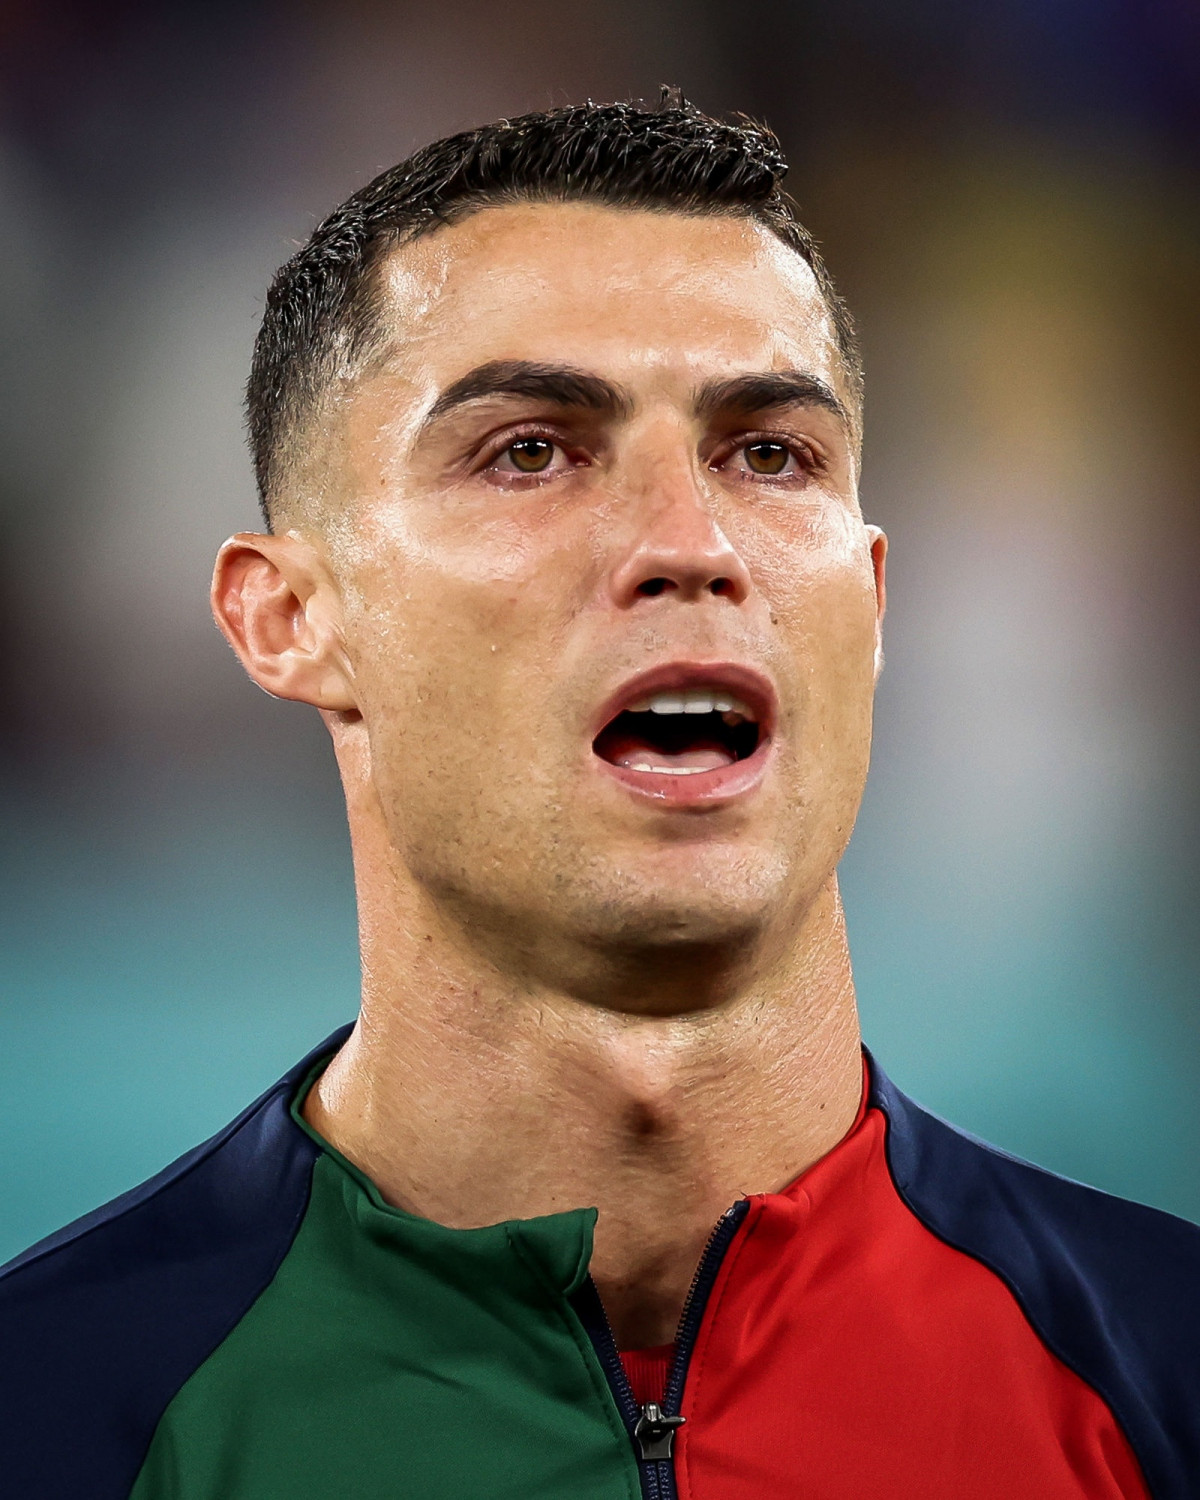 Ronaldo là một trong những cầu thủ có cảm xúc nhất của đội tuyển Bồ Đào Nha, và bạn sẽ thấy điều này rõ ràng trong hình ảnh liên quan đến anh ta. Hãy xem và cảm nhận cùng Ronaldo những giây phút đầy xúc động này.